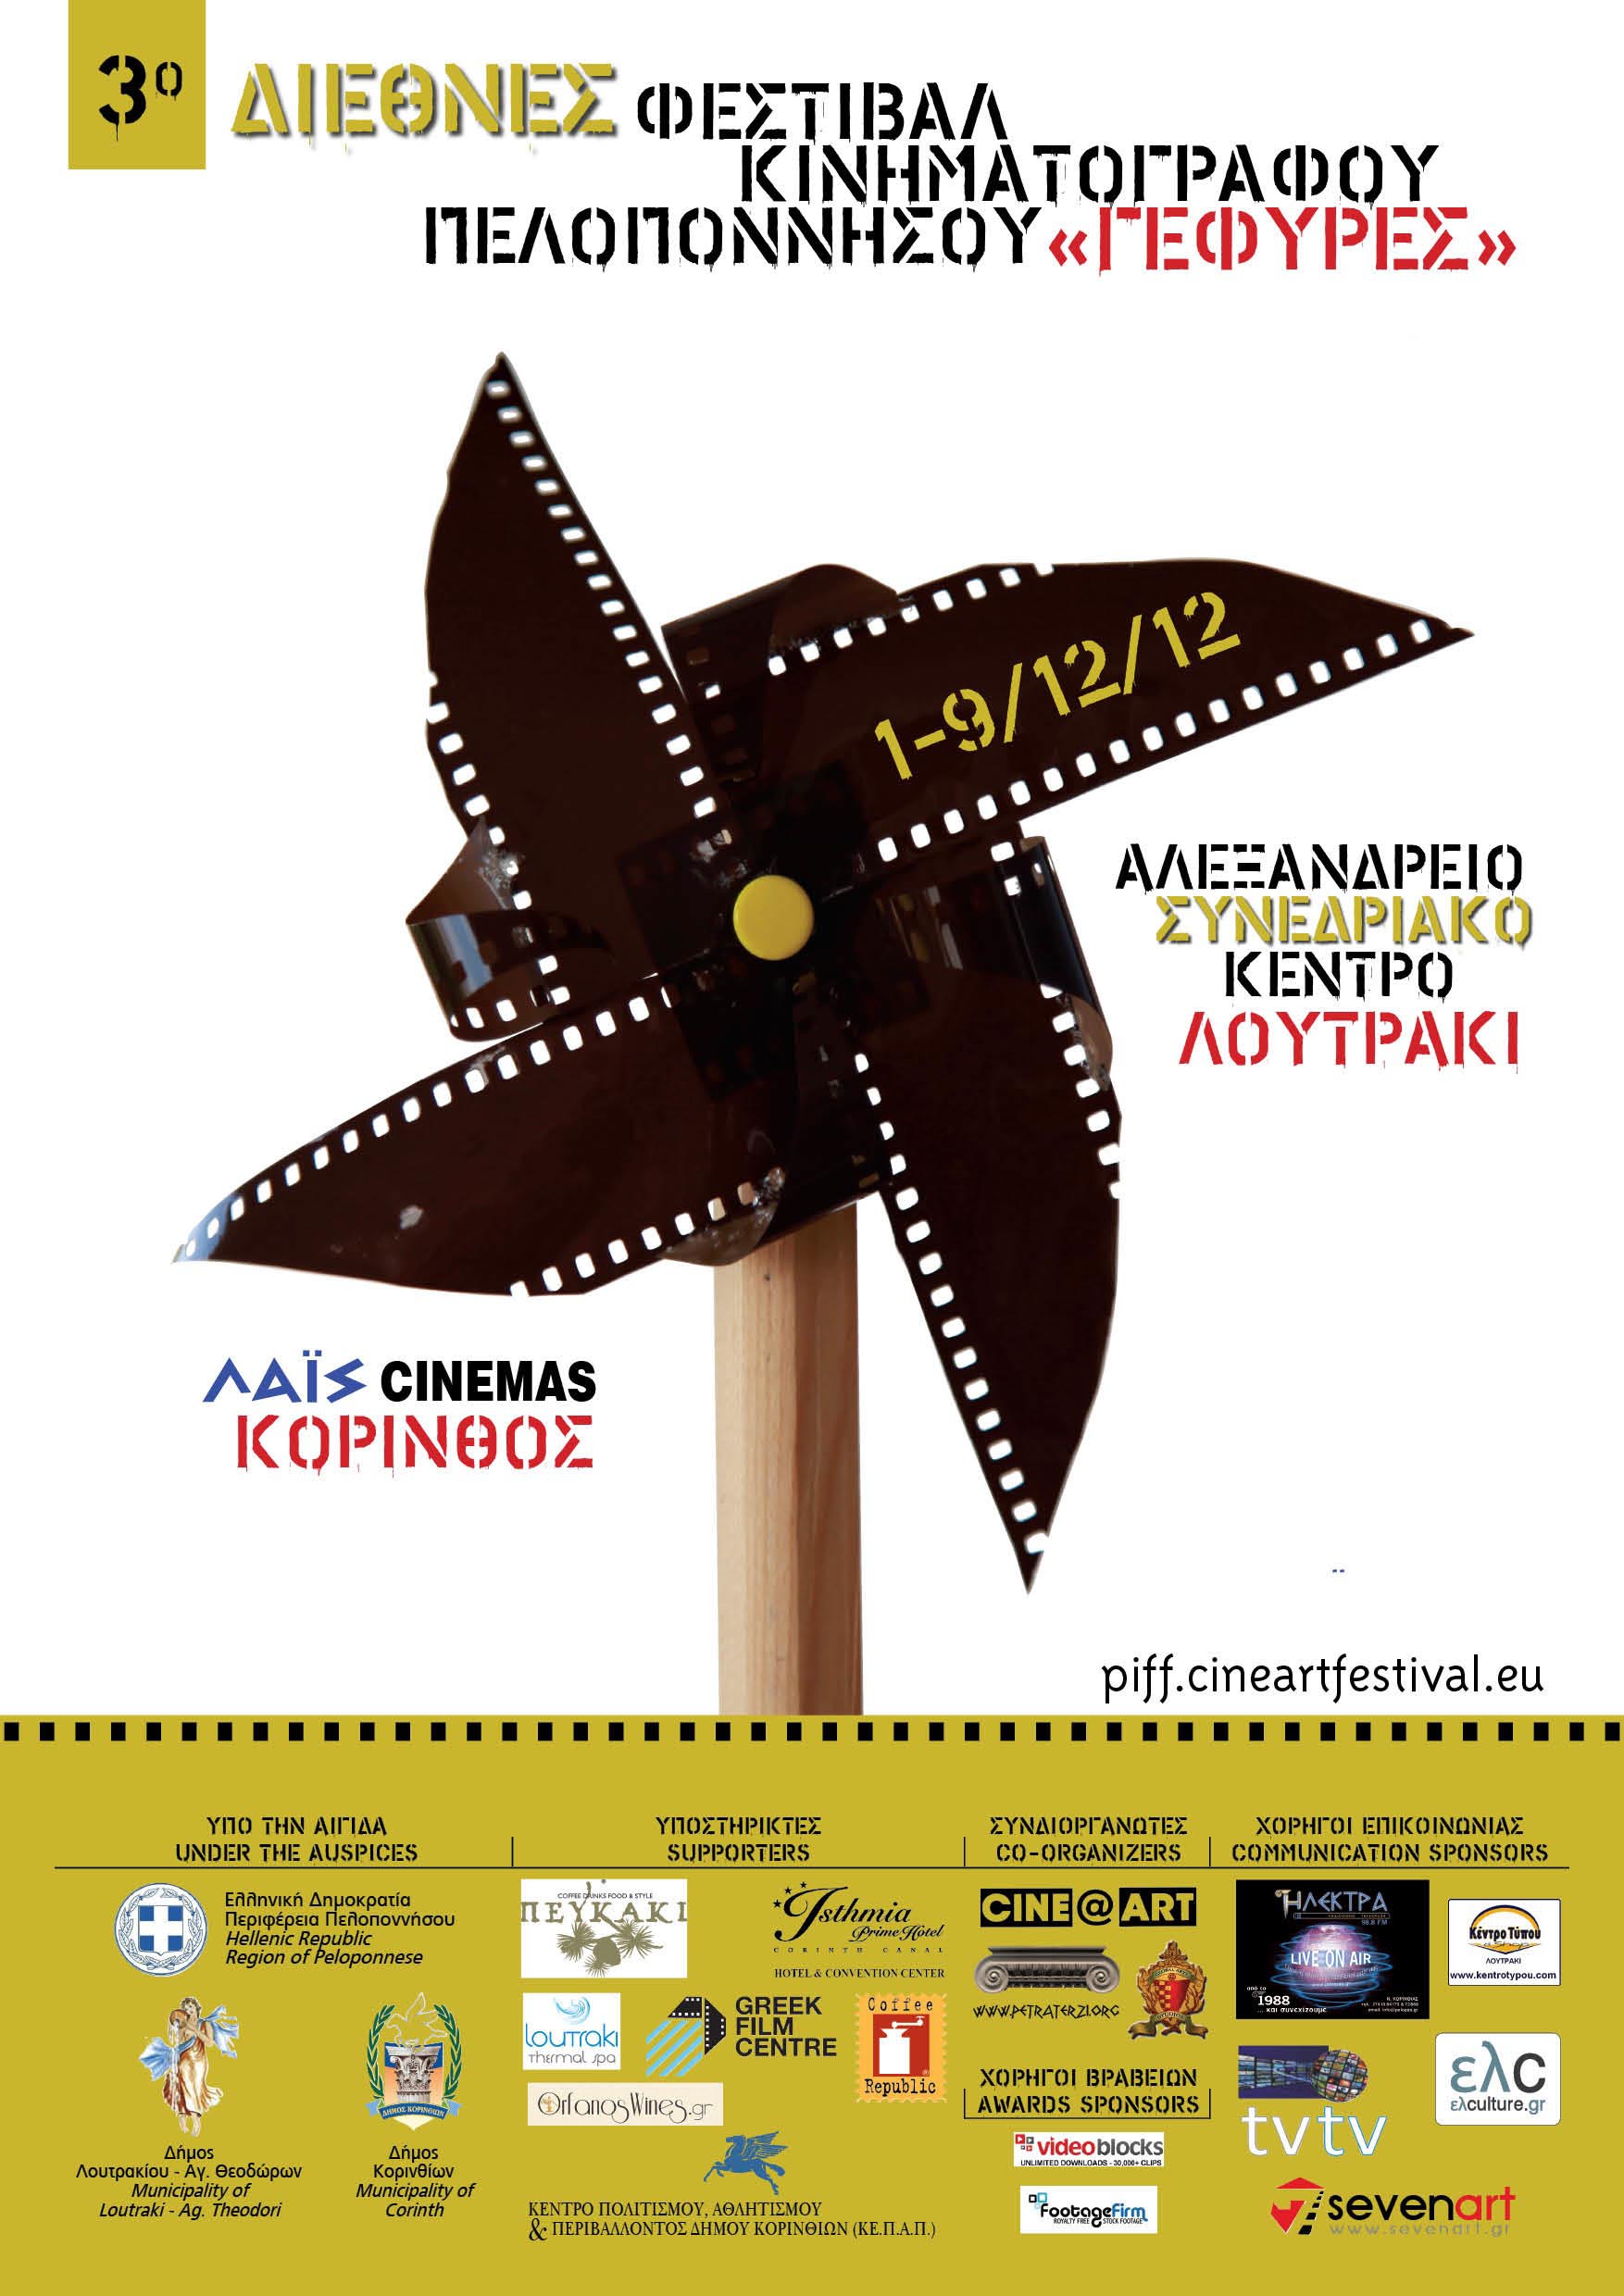 Μάθετε περισσότερα για το 3ο Διεθνές Φεστιβάλ Κινηματογράφου Πελοποννήσου "ΓΕΦΥΡΕΣ"